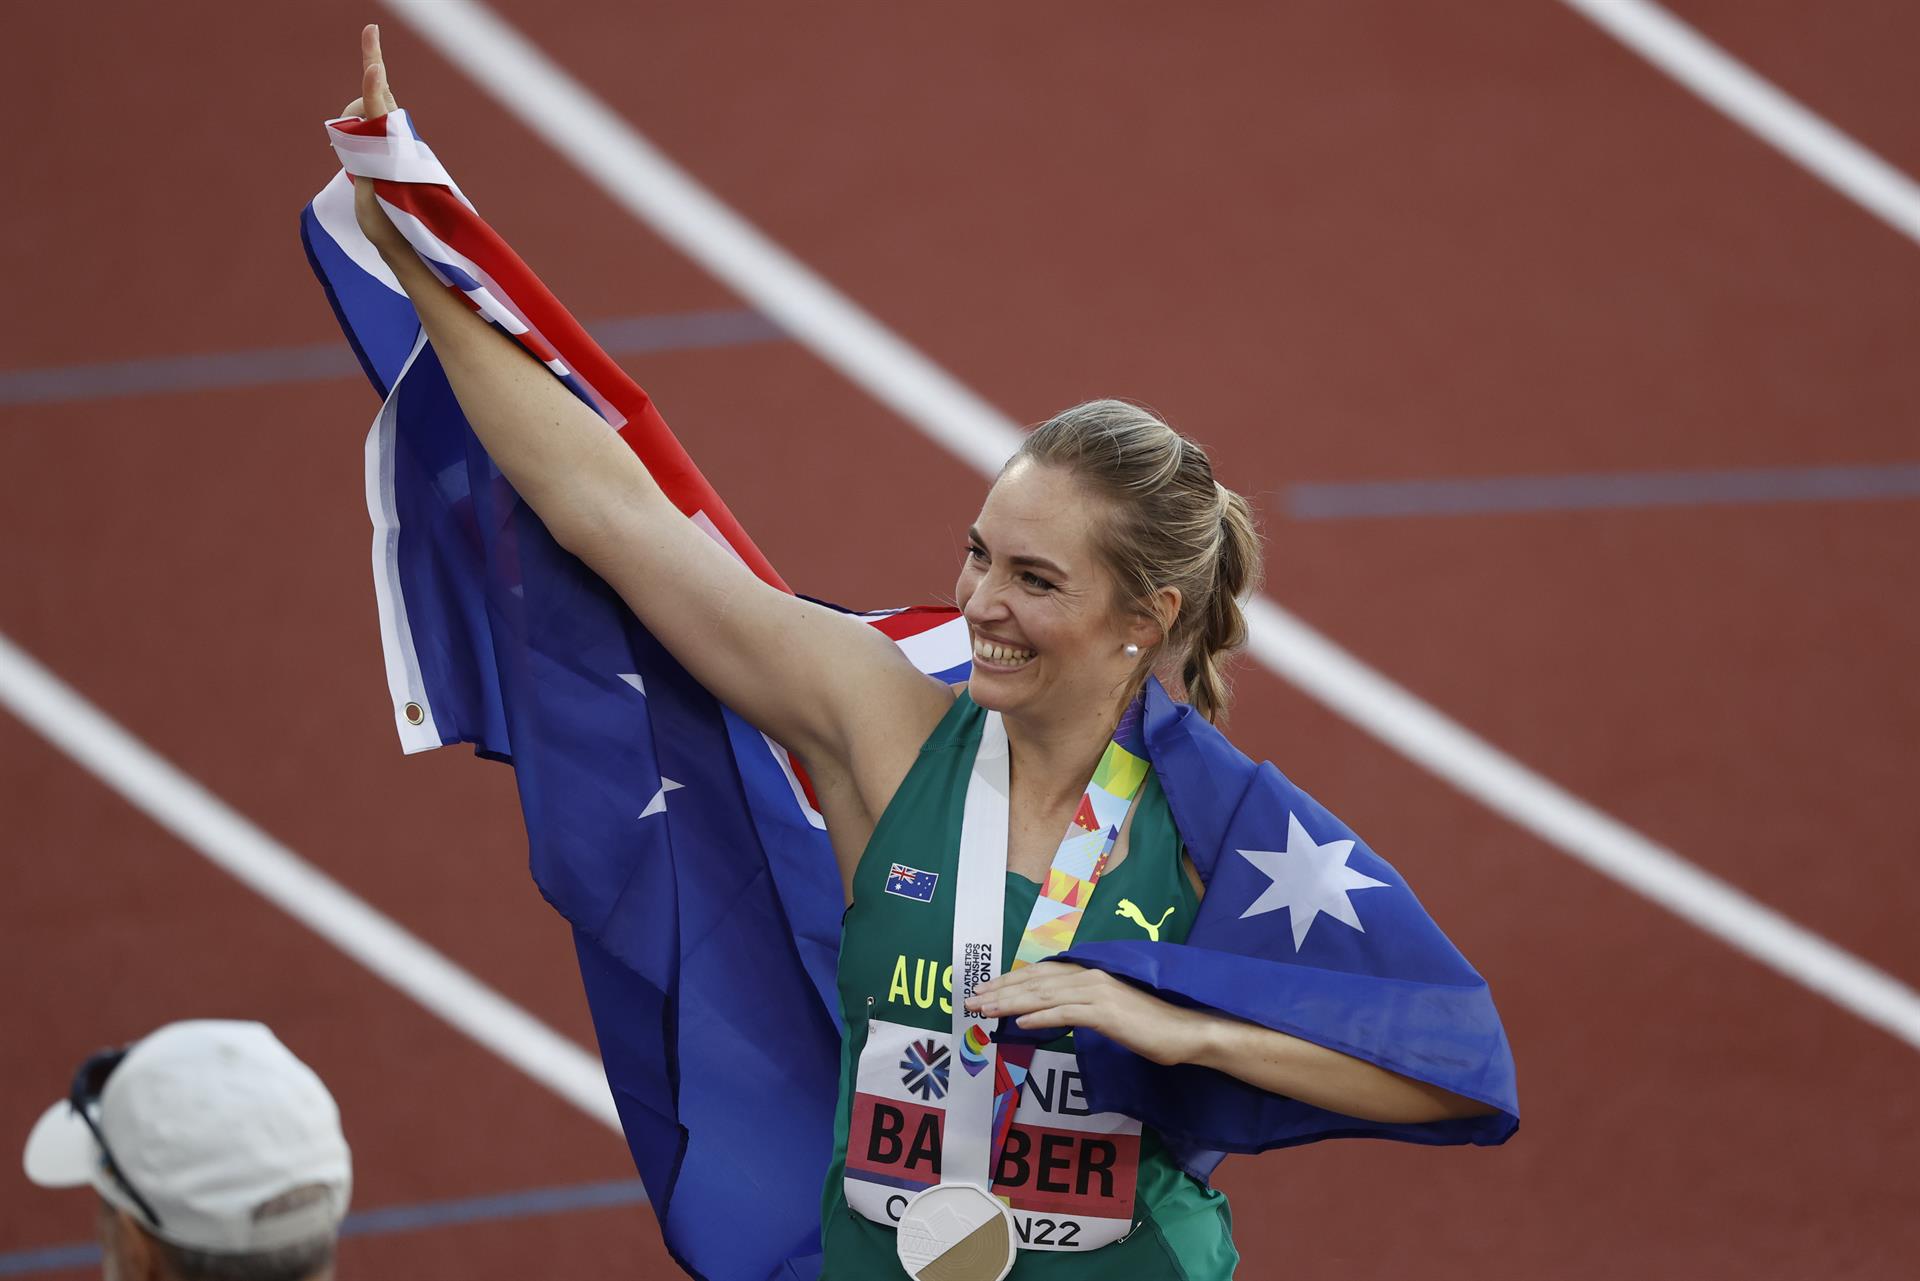 La australiana Kelsey-Lee Barber celebra su medalla de oro en la final de lanzamiento de javalina femenino hoy, en los Campeonatos mundiales de atletismo que se realizan en el estadio Hayward Field en Eugene (EE.UU.). EFE/ Kai Forsterling
